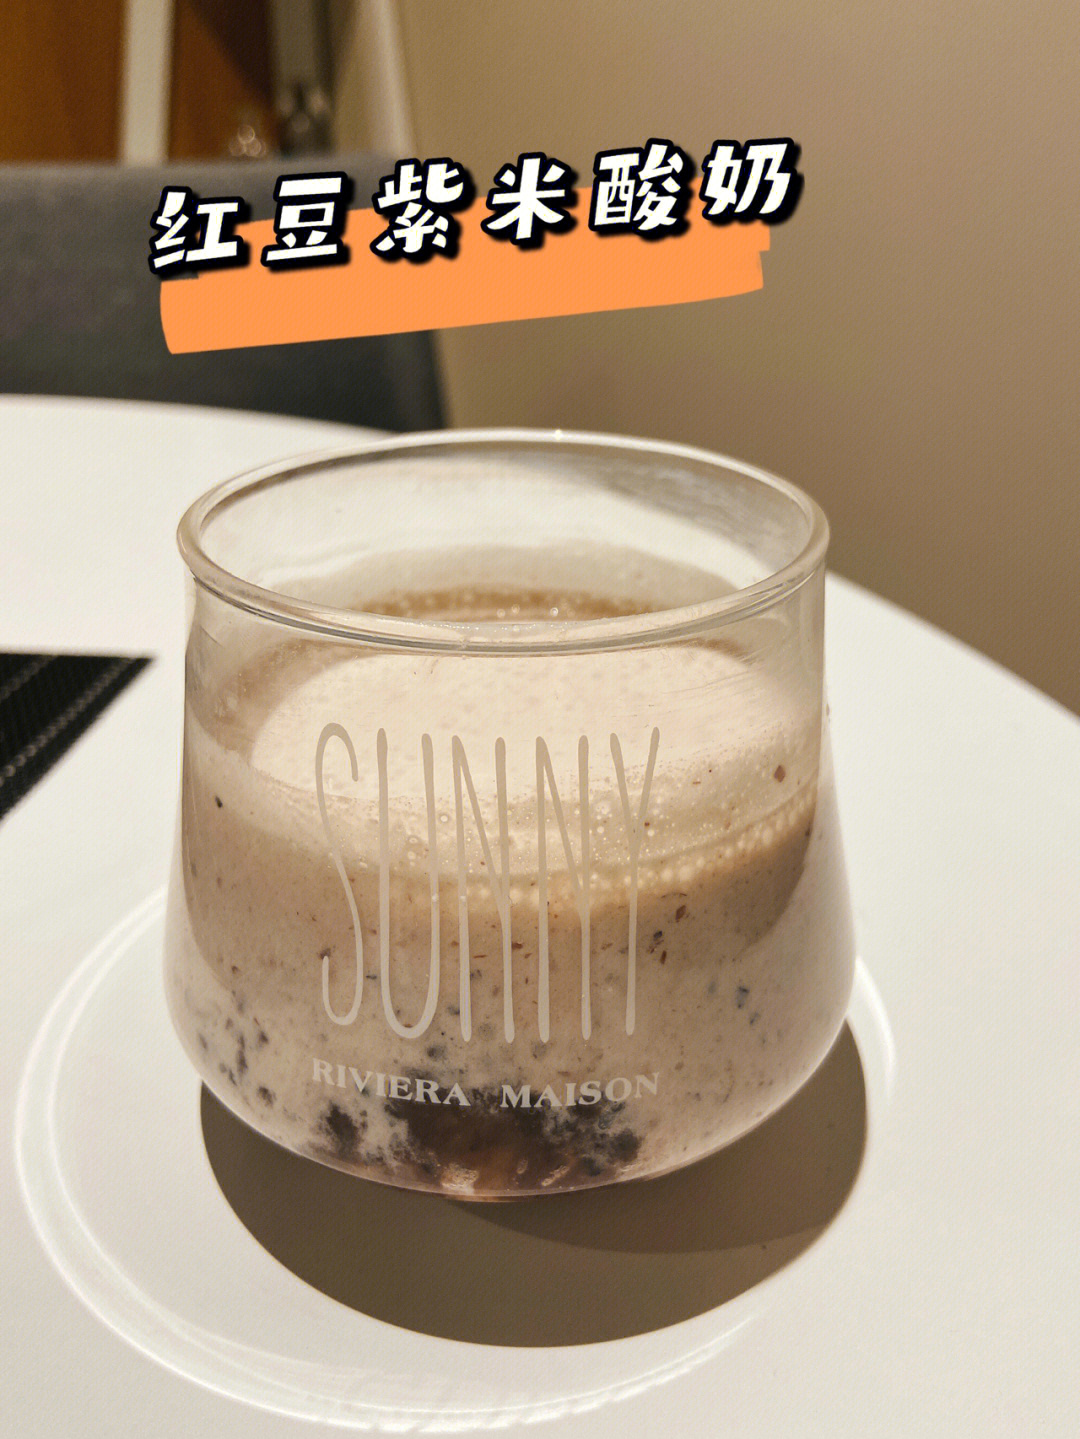 自制红豆紫米酸奶